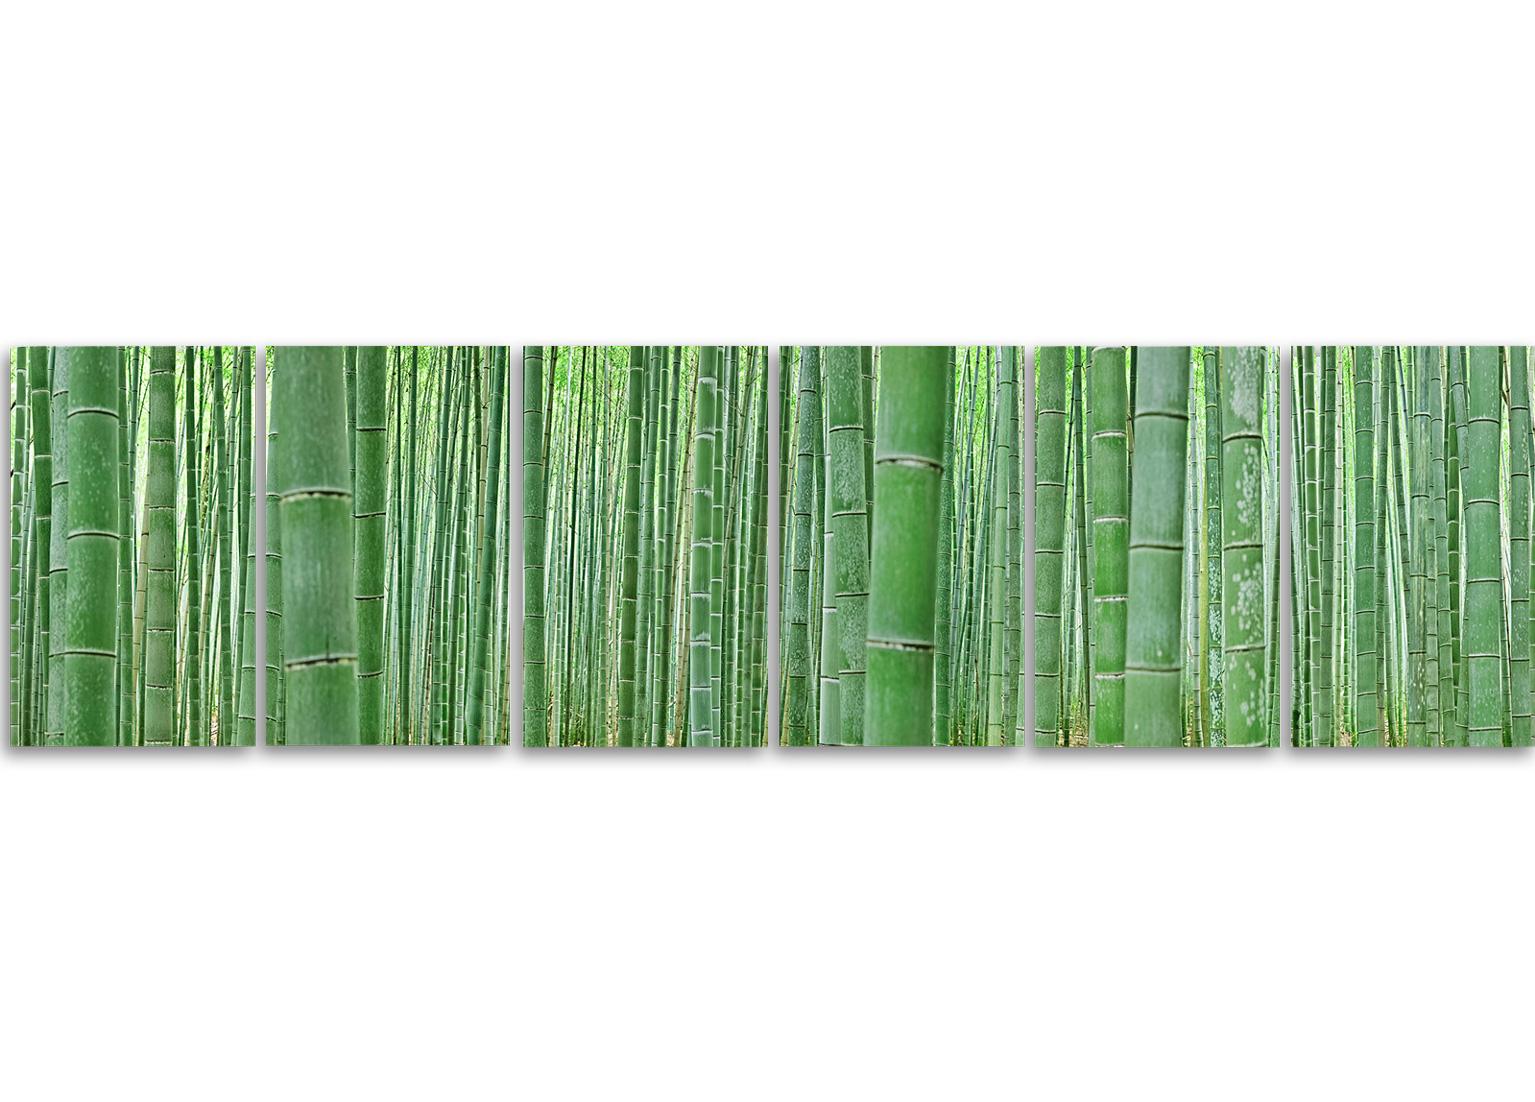 Bambou Forest - observation de la nature abstraite d'un arbore de bambou japonais emblématique - Contemporain Photograph par Erik Pawassar